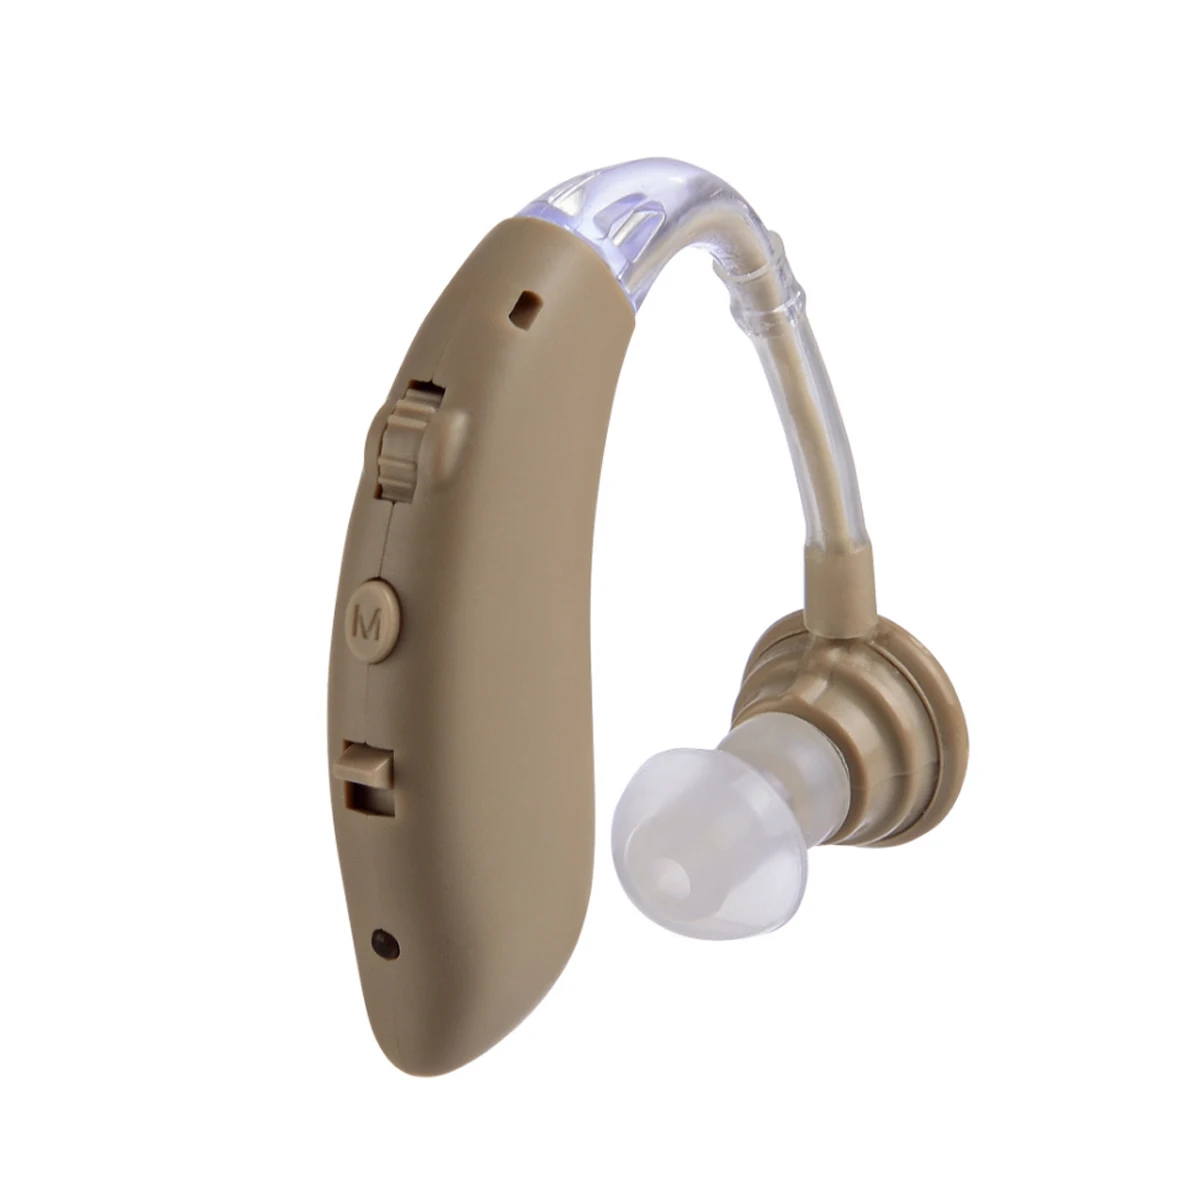 Усилитель звука слухового аппарата инструменты для ухода перезаряжаемые Регулируемые слуховые аппараты для пожилых людей/потери слуха пациента - Цвет: Бежевый